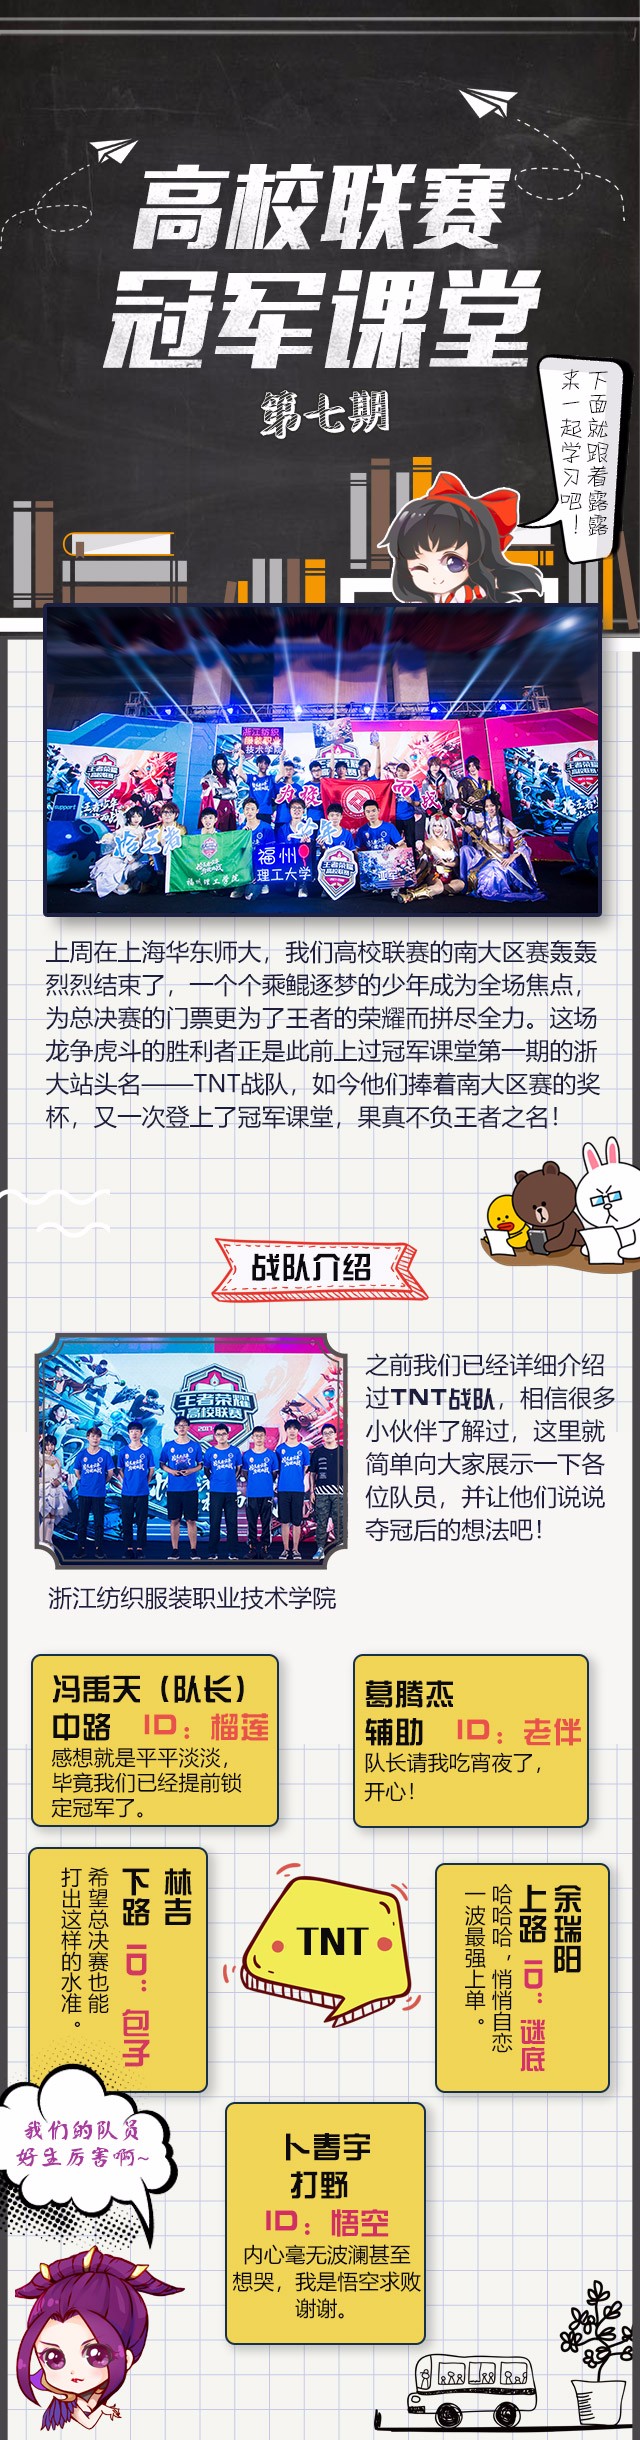 冠军课堂 南大区头号种子战队tnt 王者荣耀官方网站 腾讯游戏